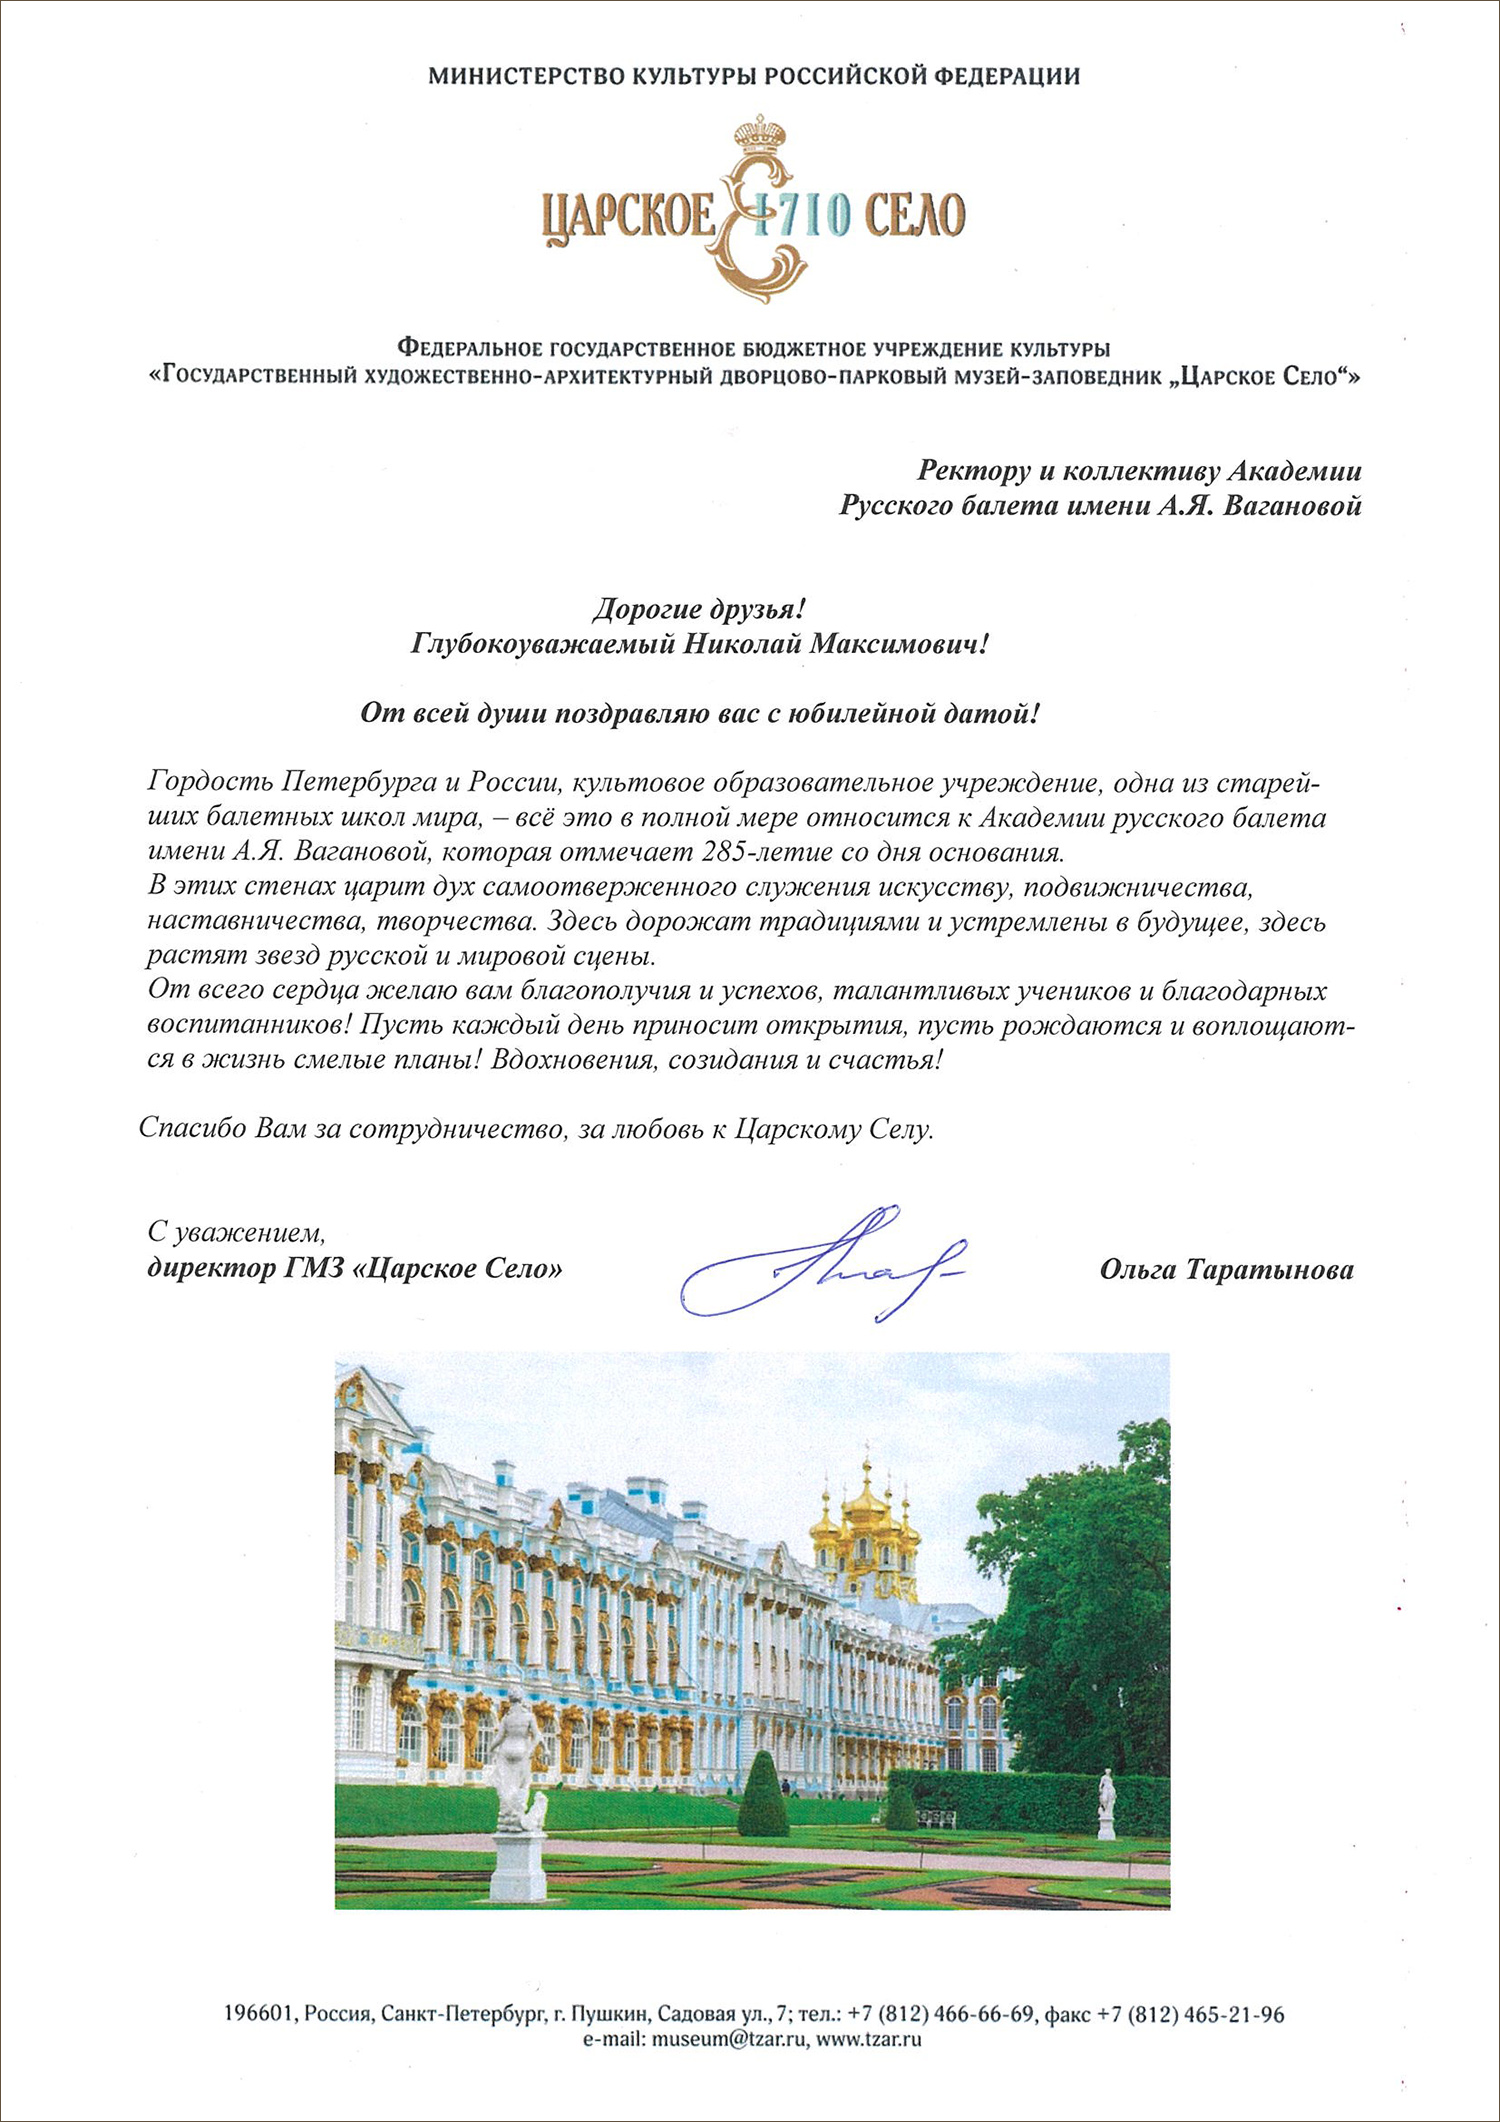 Поздравление от Екатерининского дворца